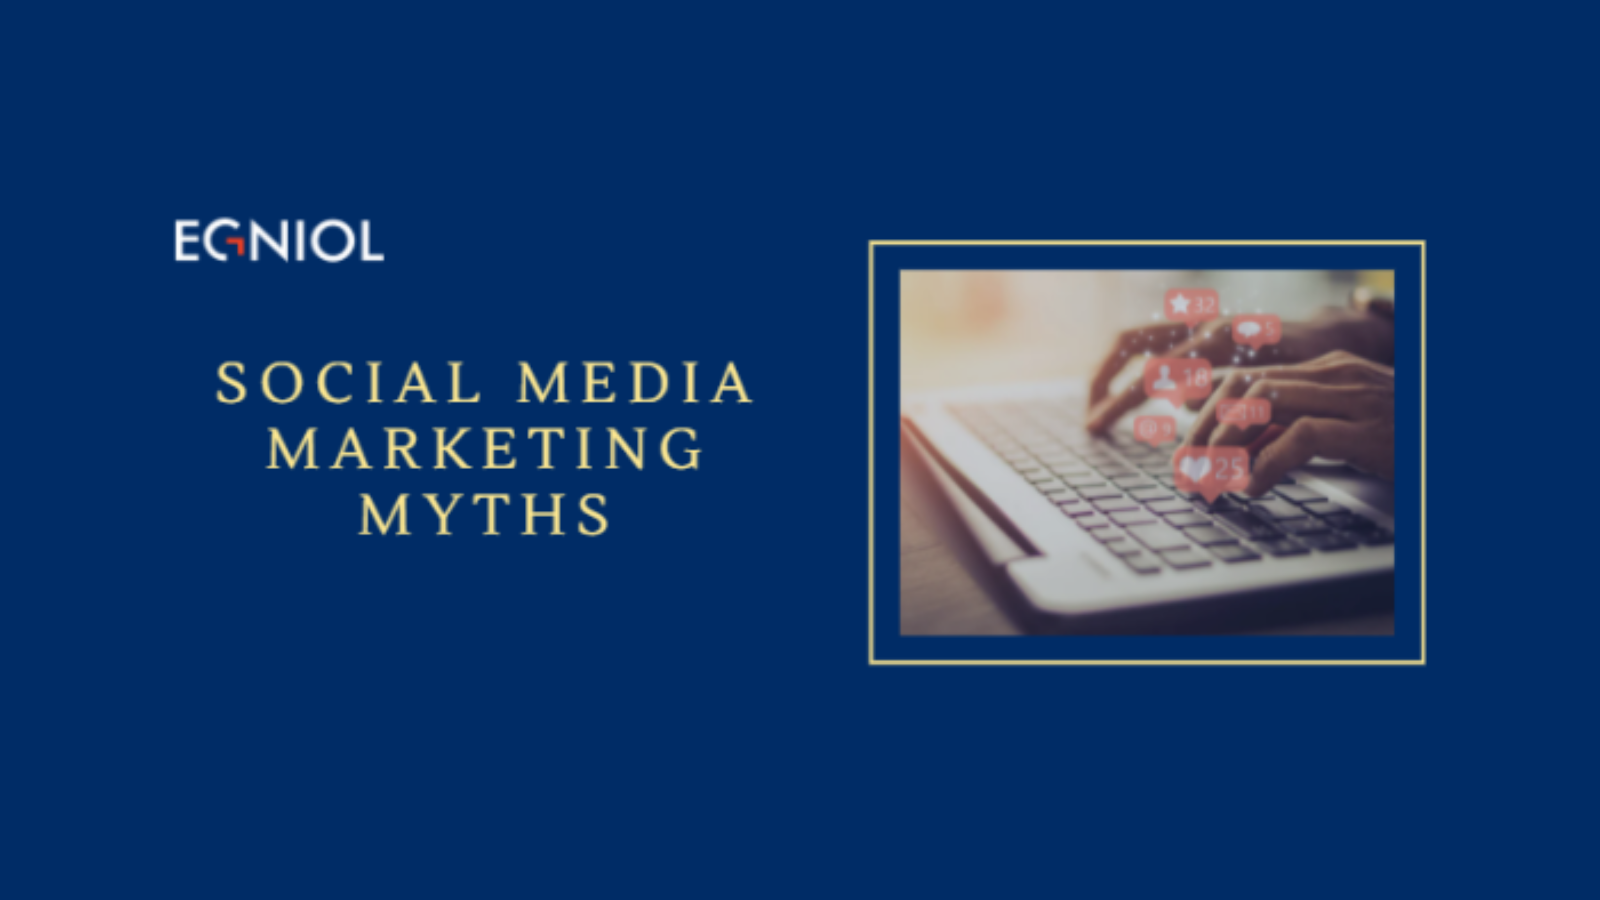 Social Media Marketing Myths - By Egniol